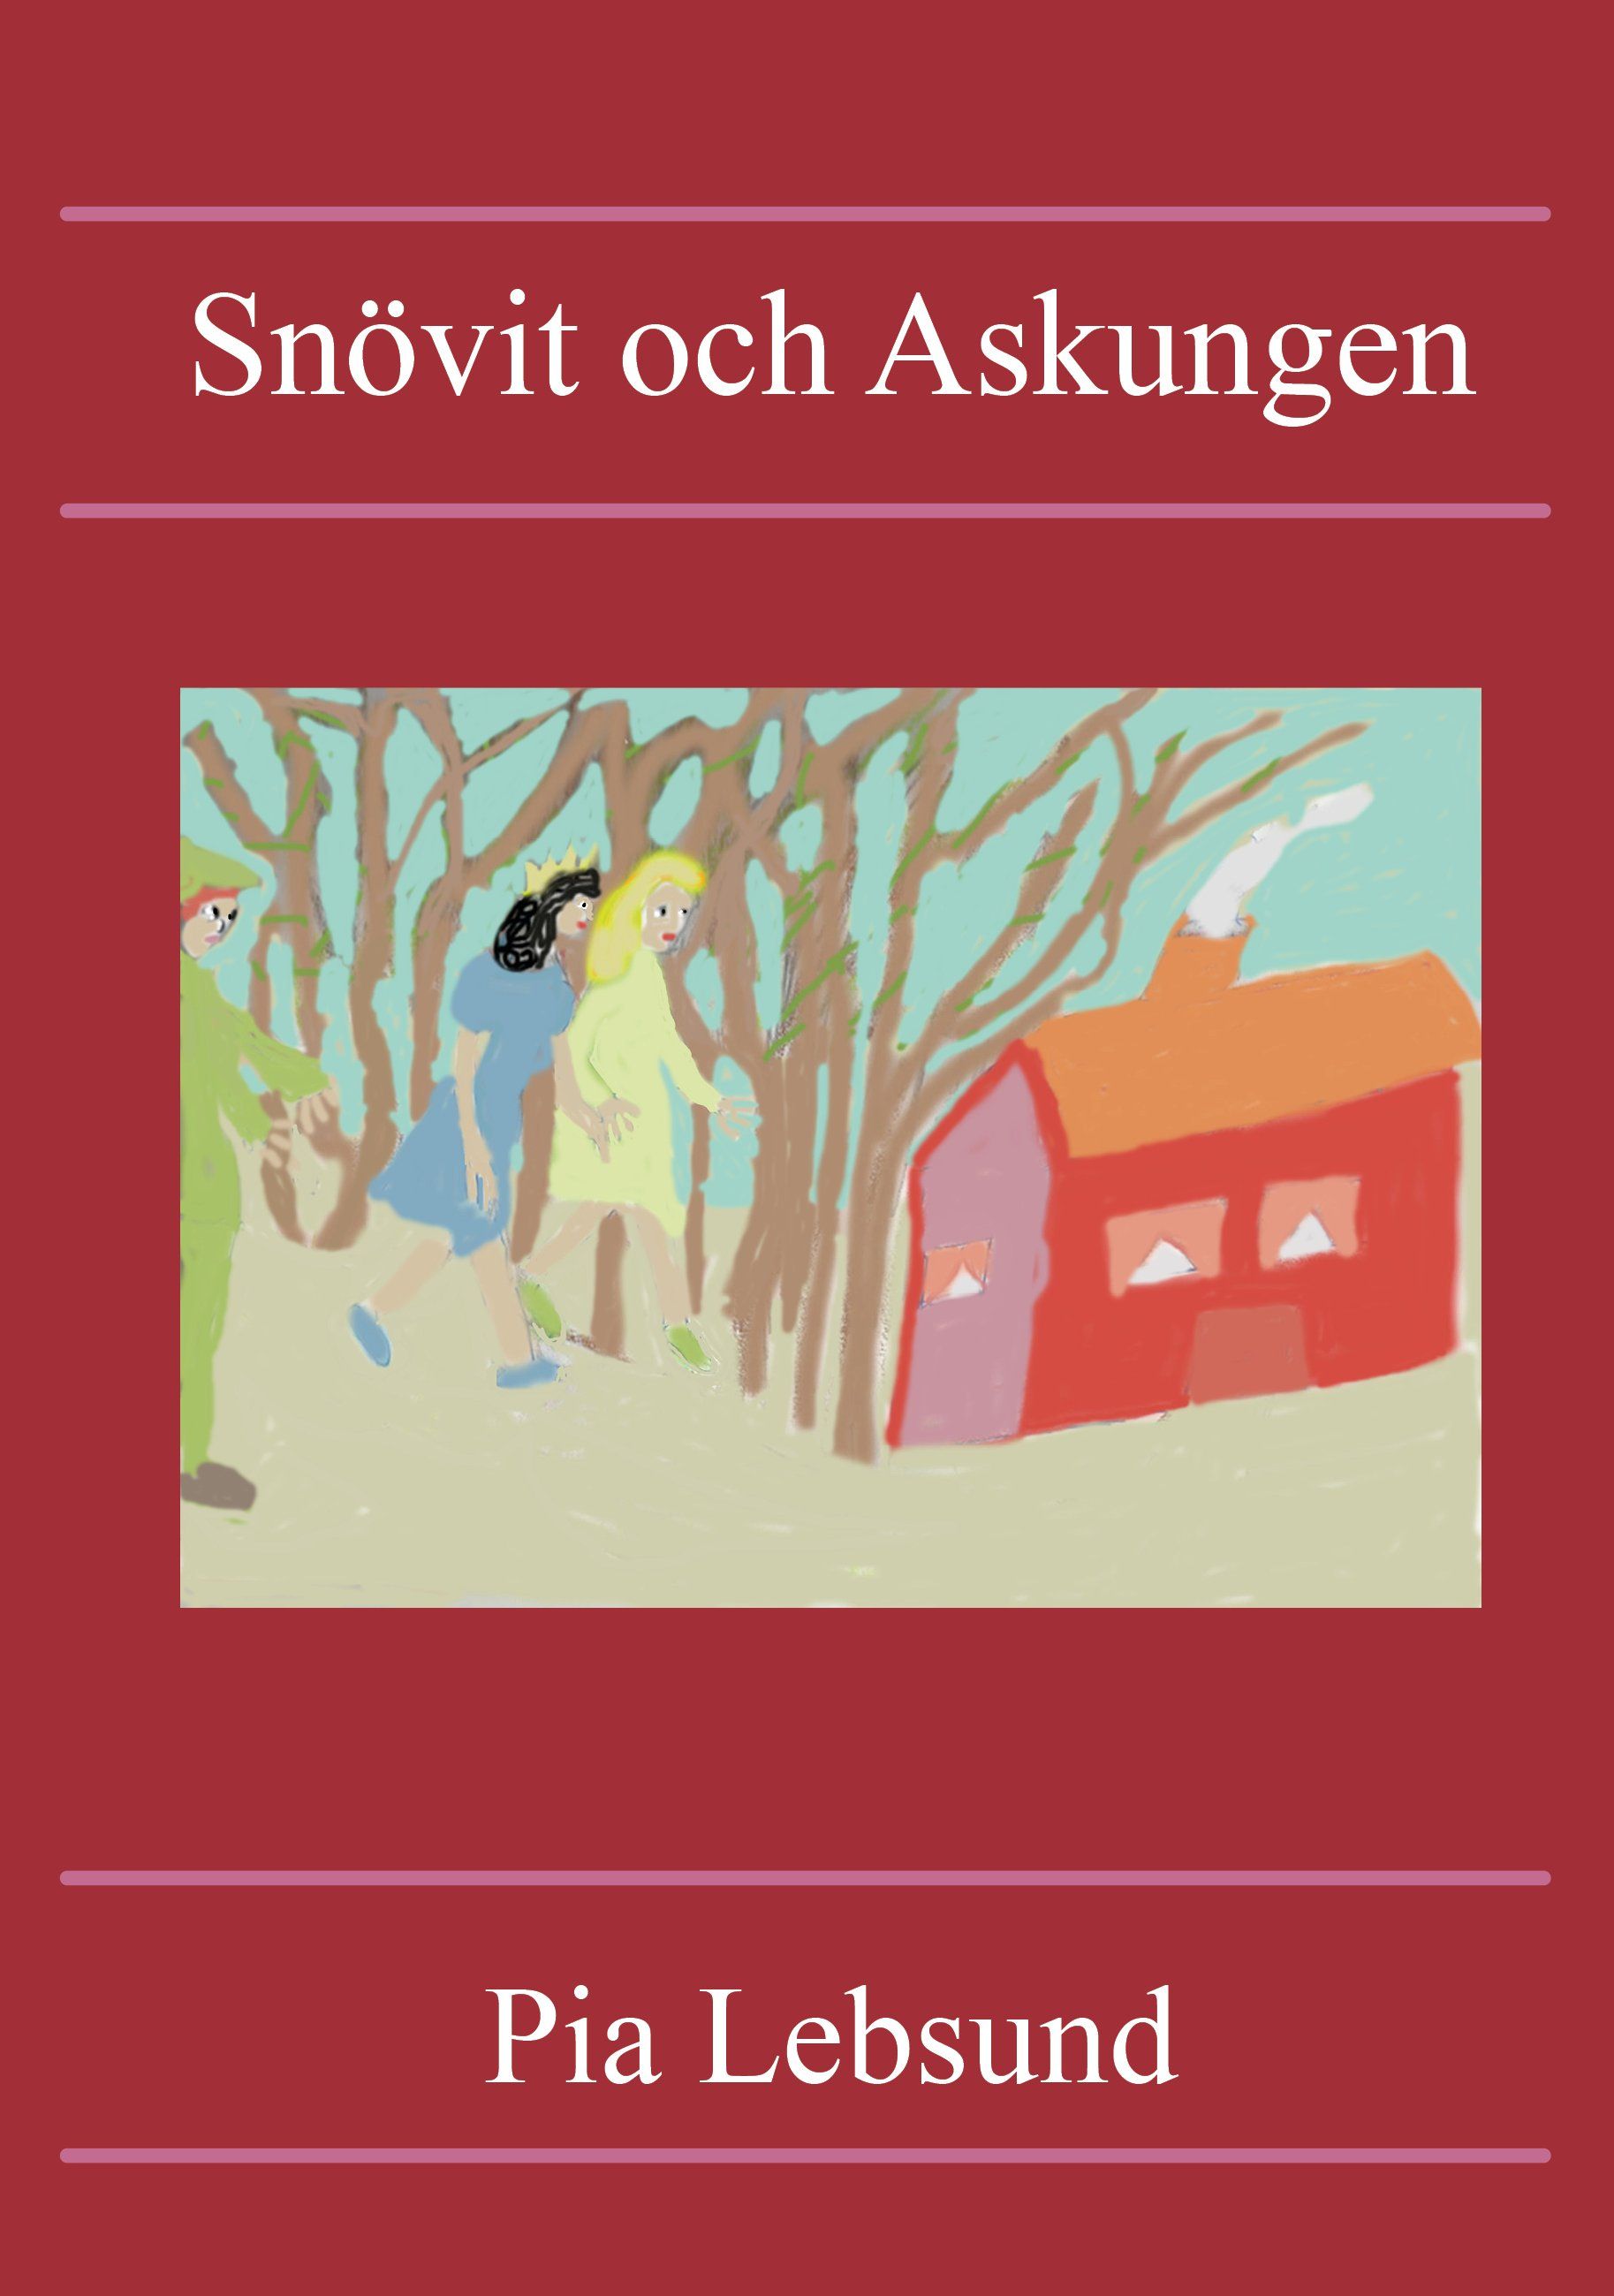 Snövit och Askungen, eBook by Pia Lebsund